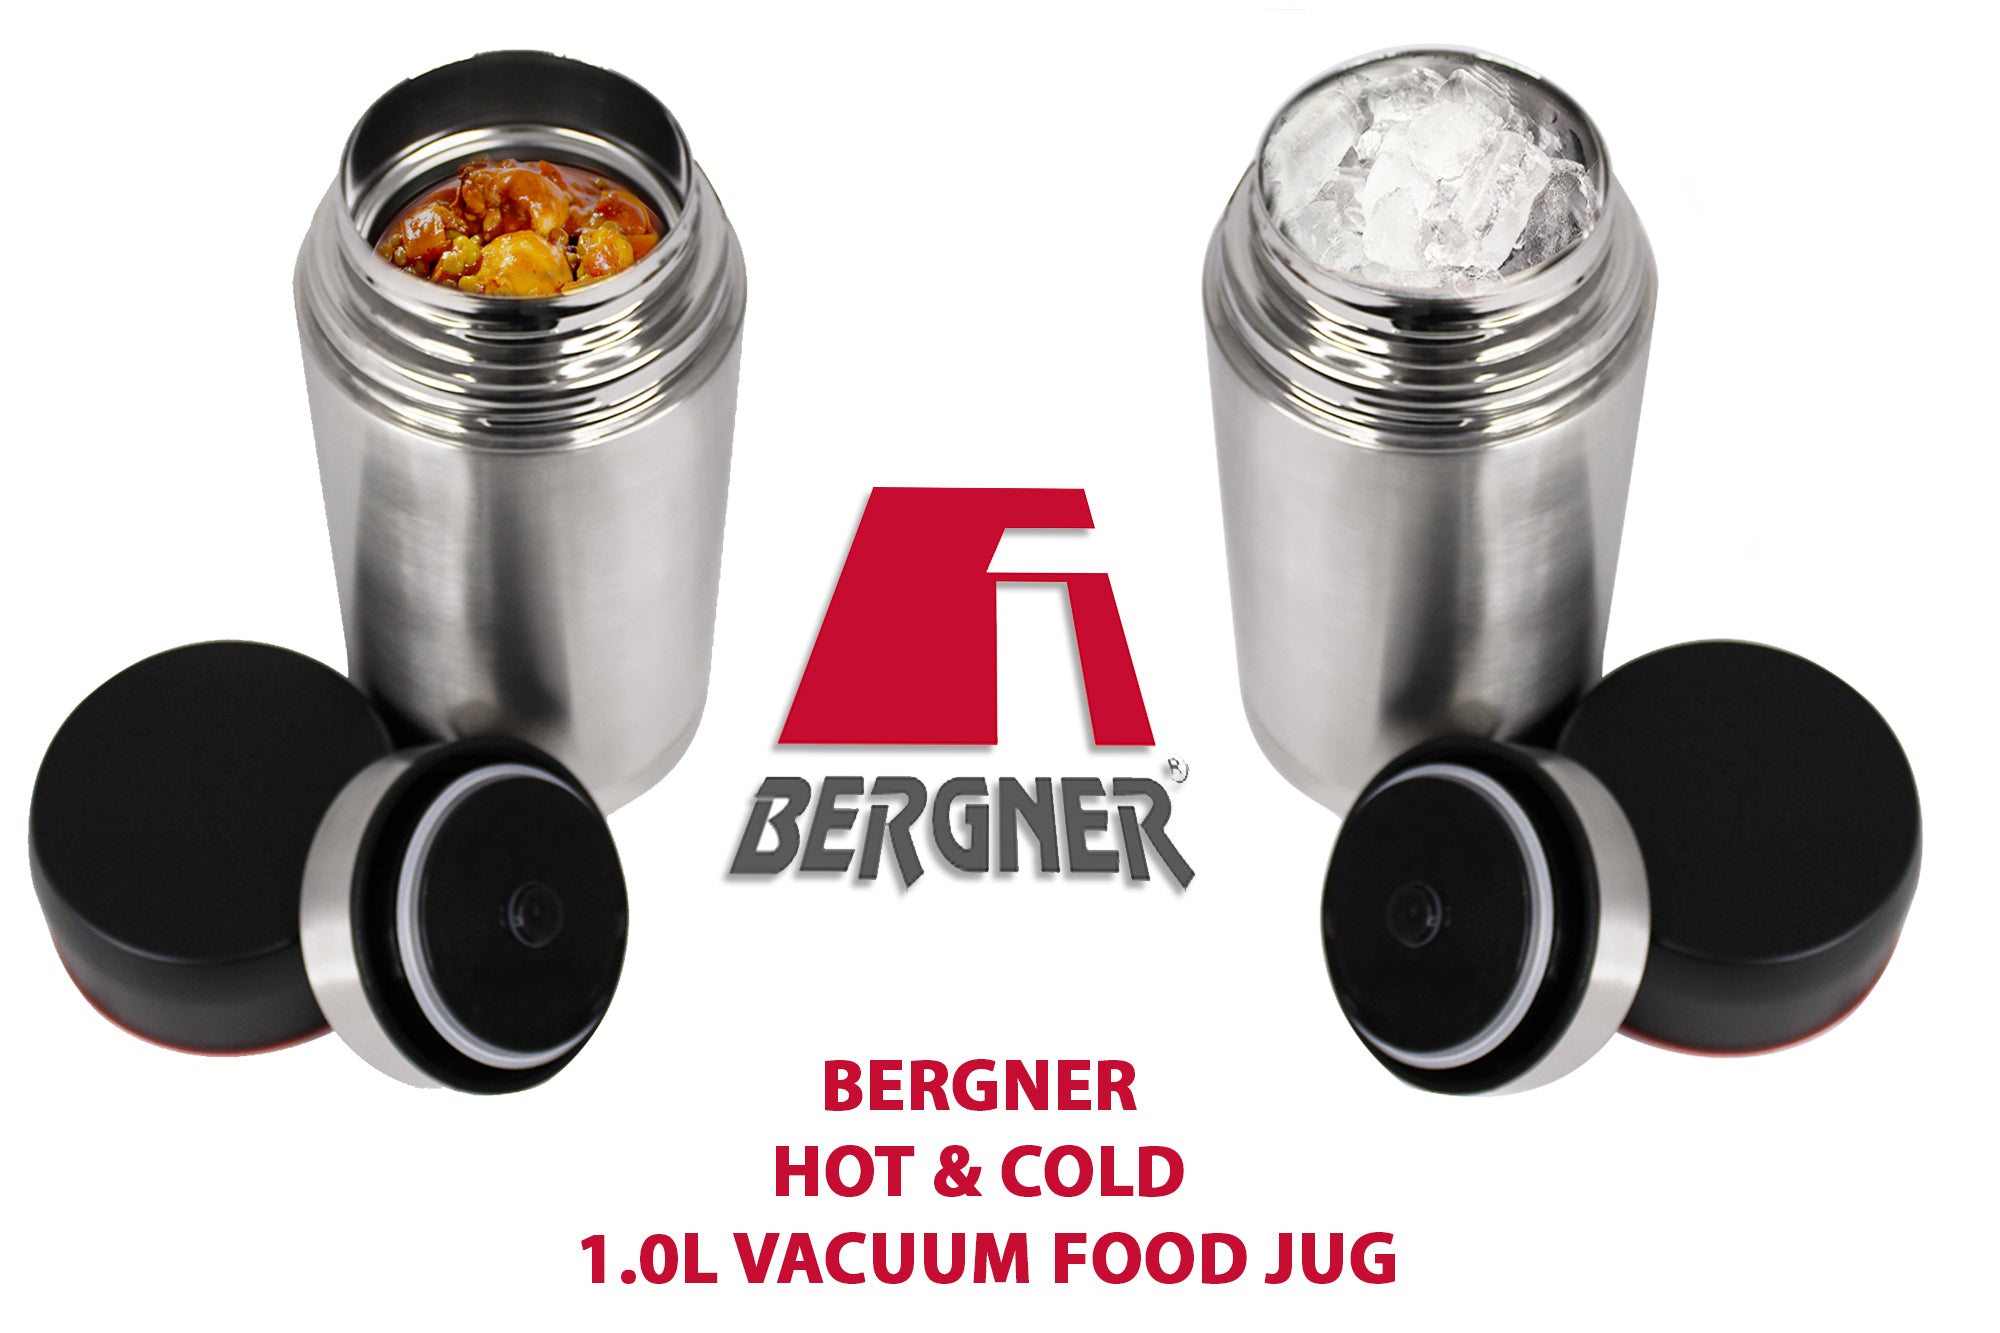 Bergner 1000ml Stainless Steel Hot & Cold Travel Vacuum Food Jug